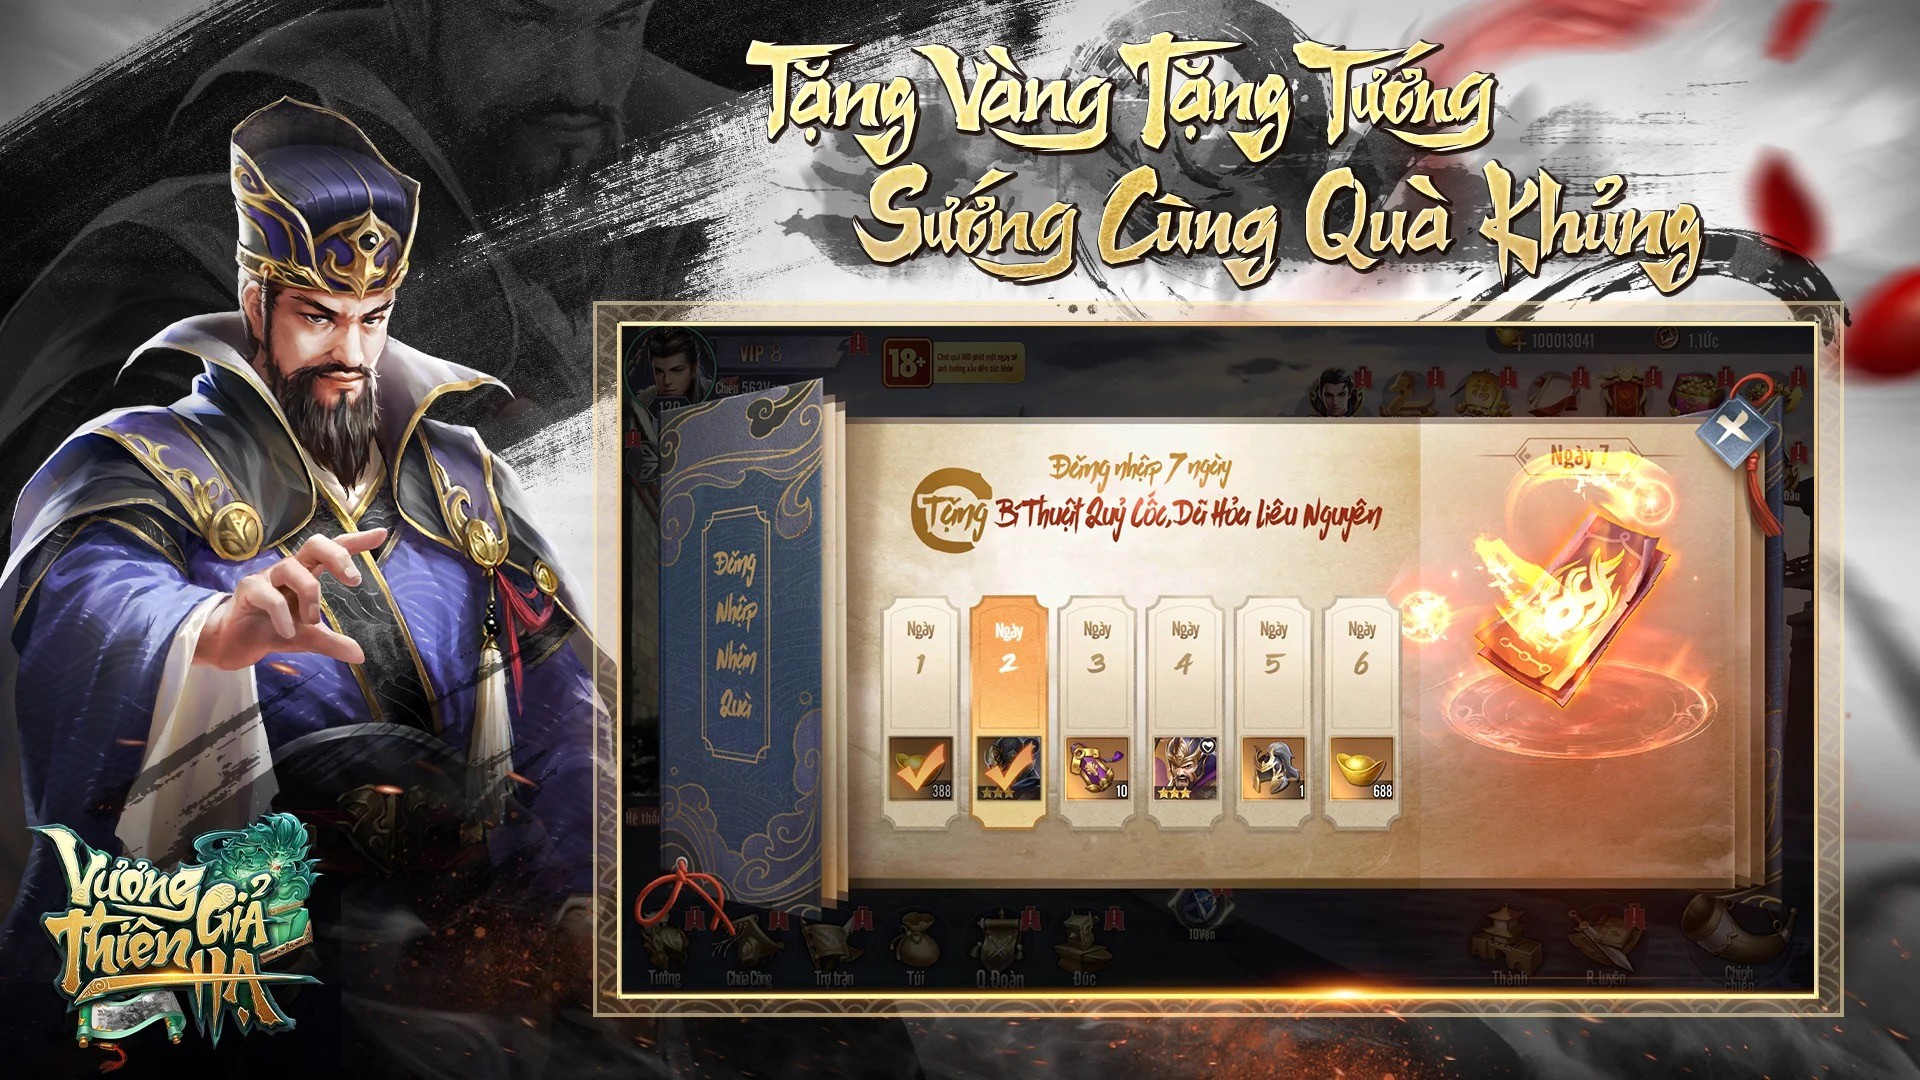 Vương Giả Thiên Hạ: Game đấu tưởng rảnh tay đến từ Migame